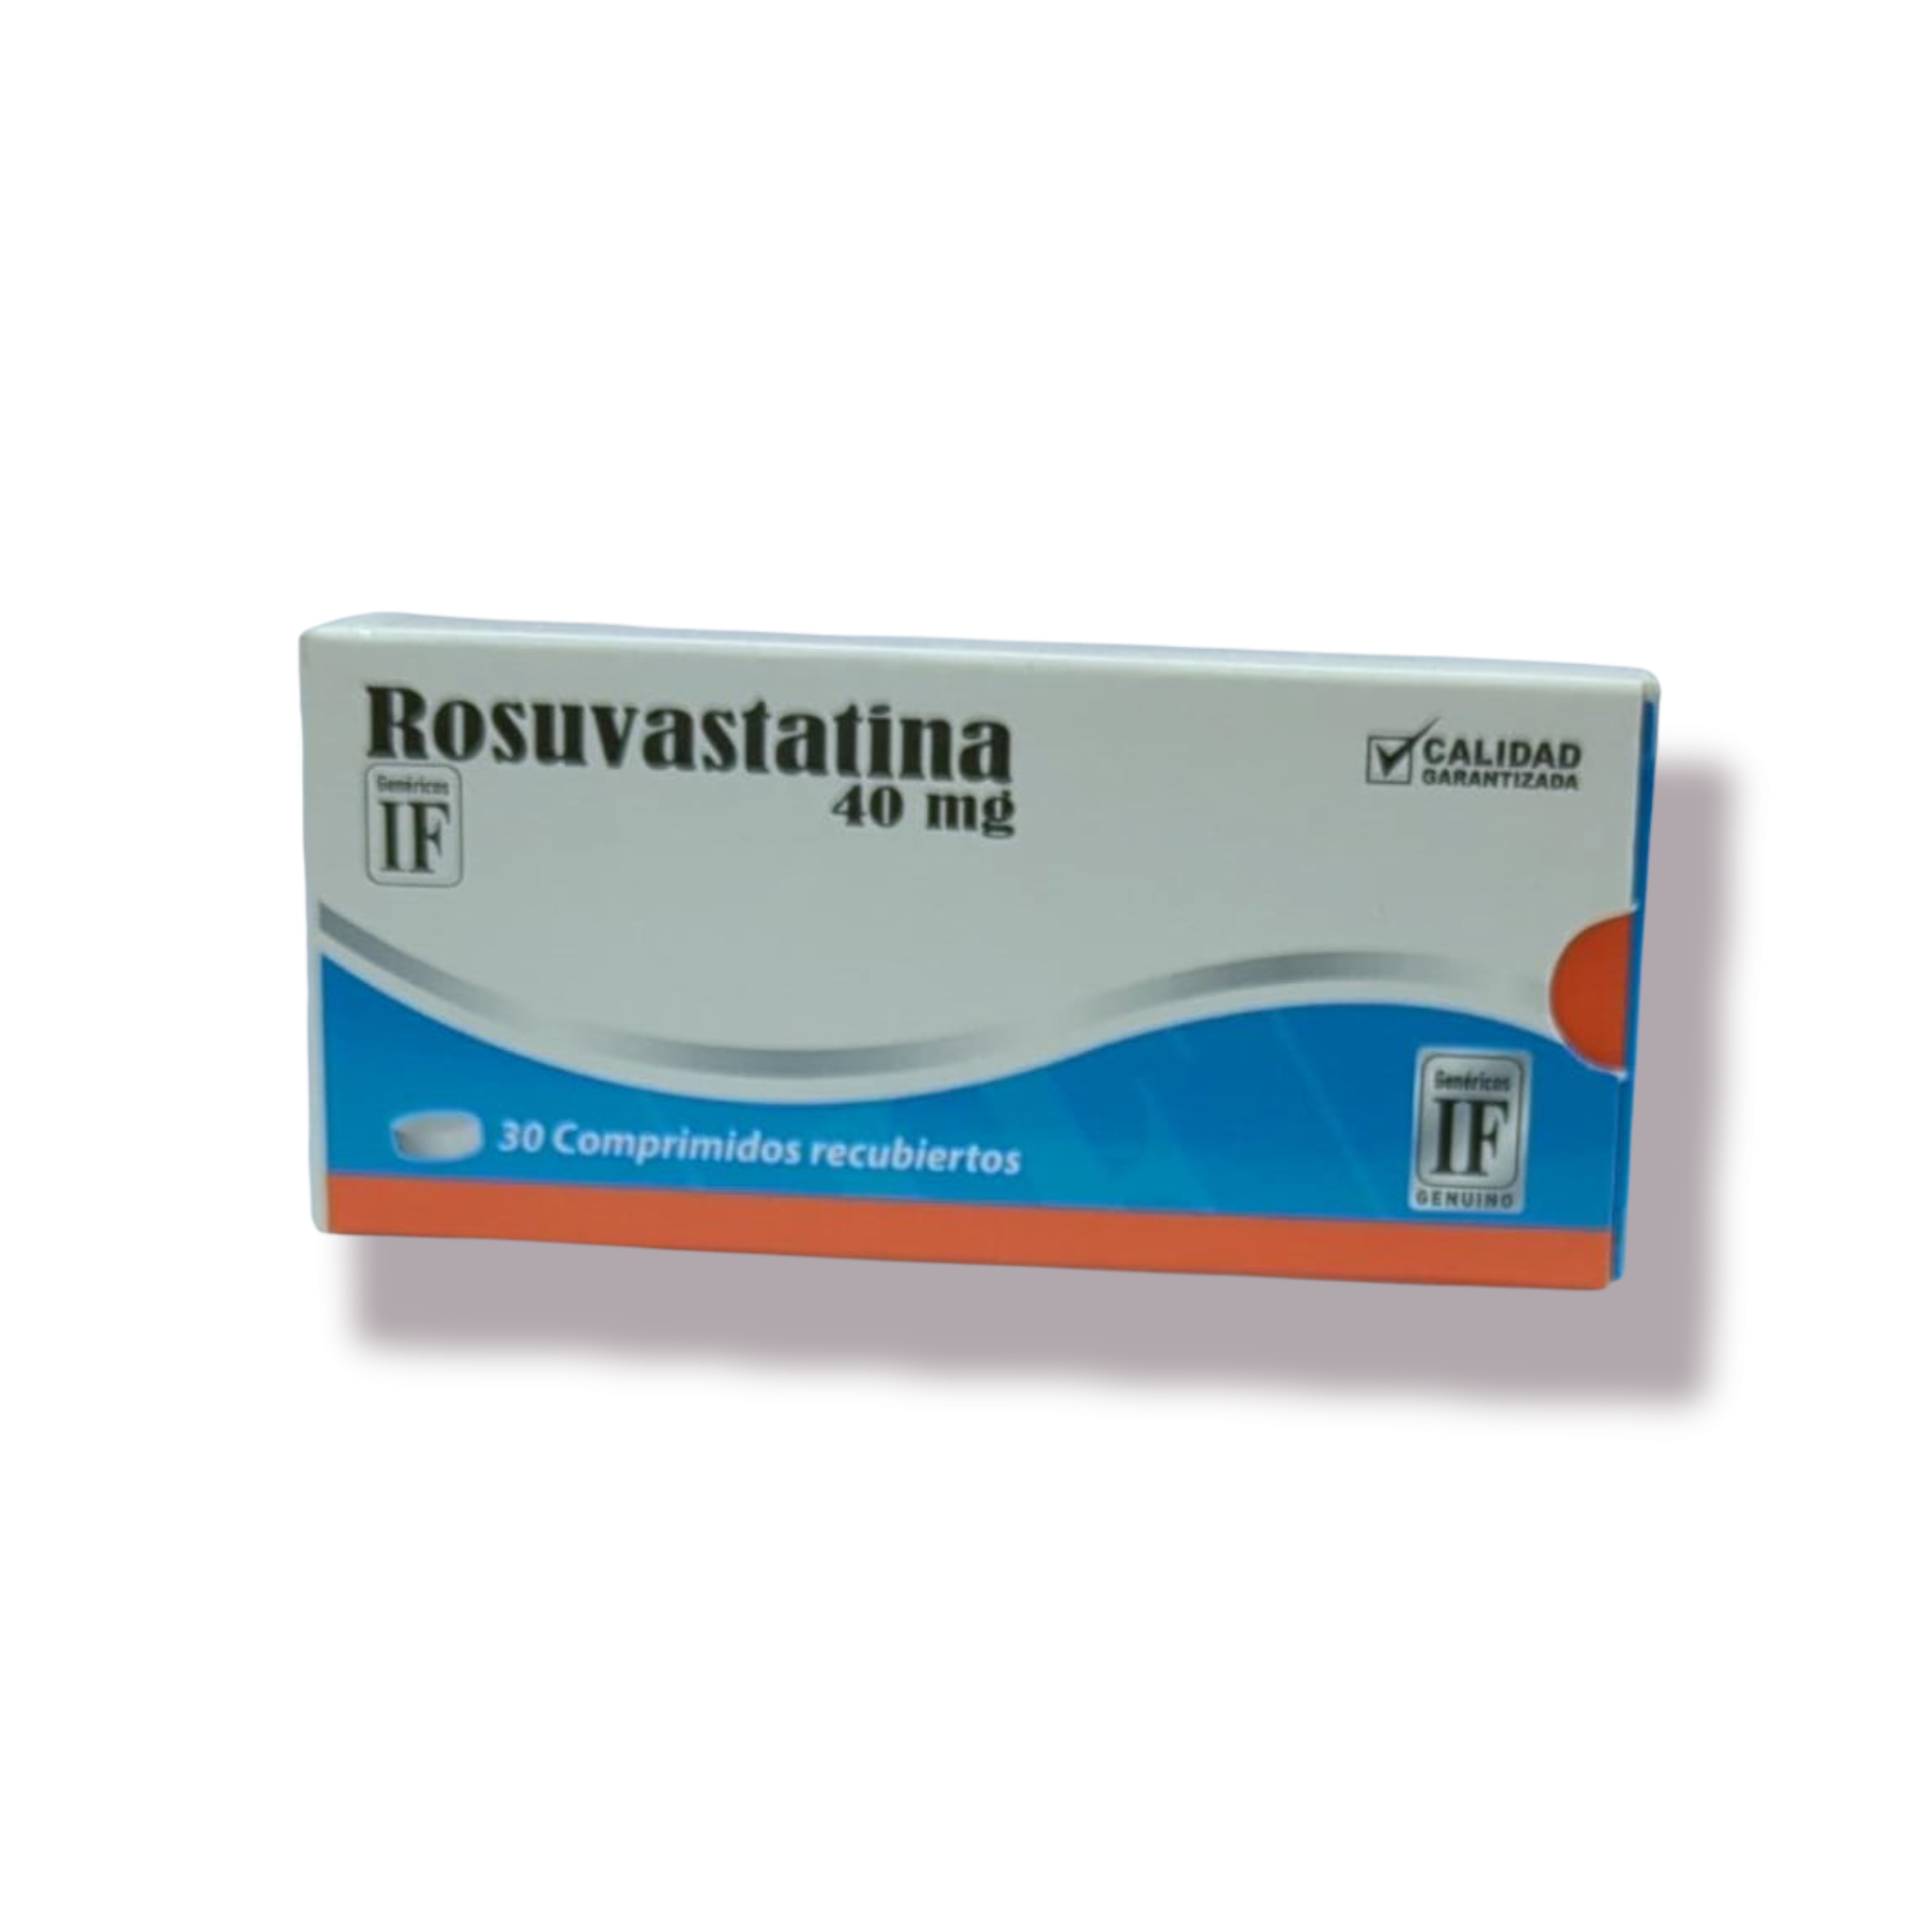 Rosuvastatina 40mg/30mg .rec dt